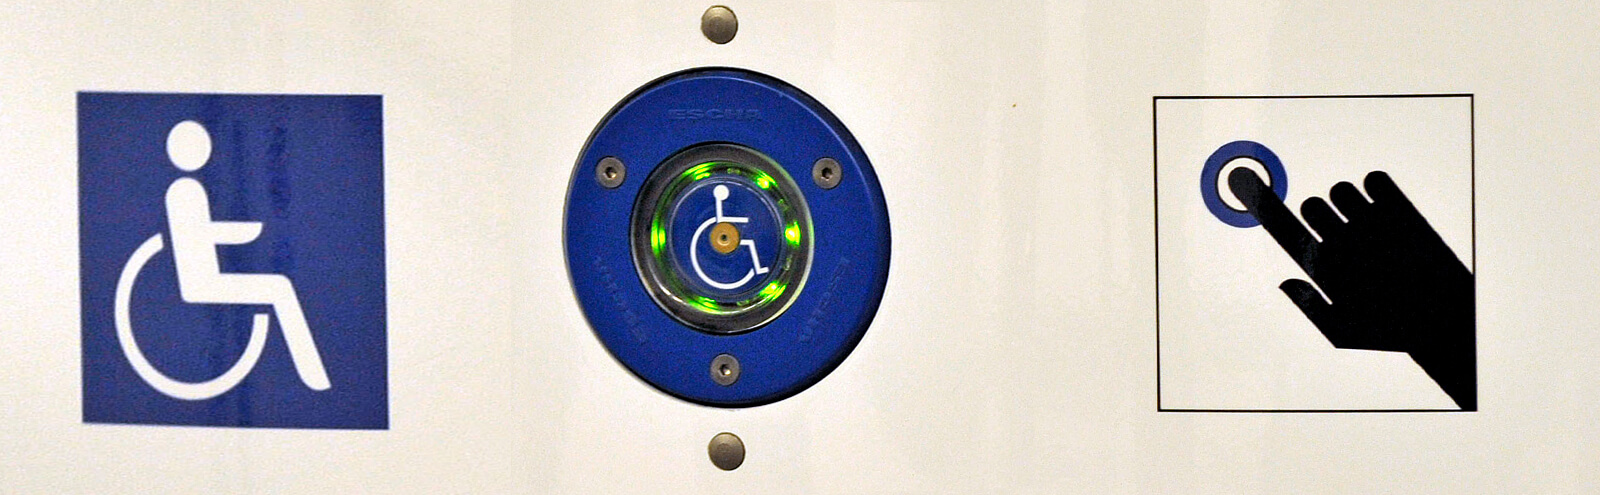 Bildausschnitt der Notruf- und Informationssäule, der den blauen Knopf für Menschen mit Behinderungen und Mobilitätseinschränkungen in Nahaufnahme zeigt